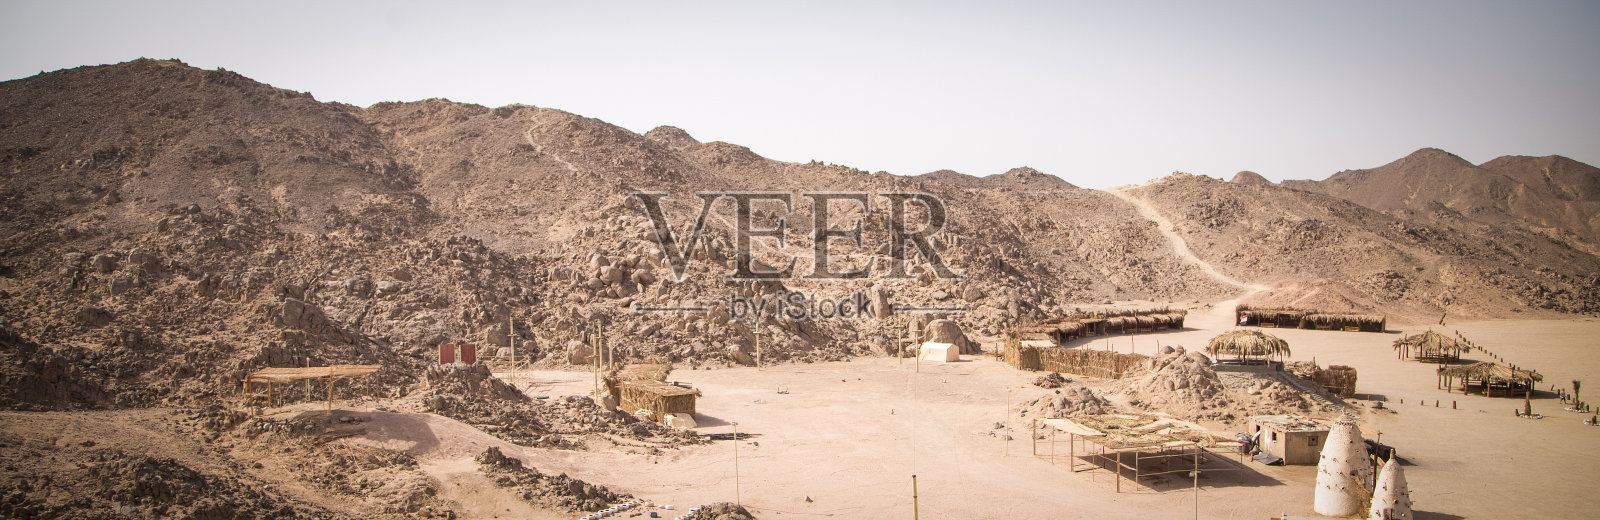 撒哈拉沙漠的风景照片摄影图片